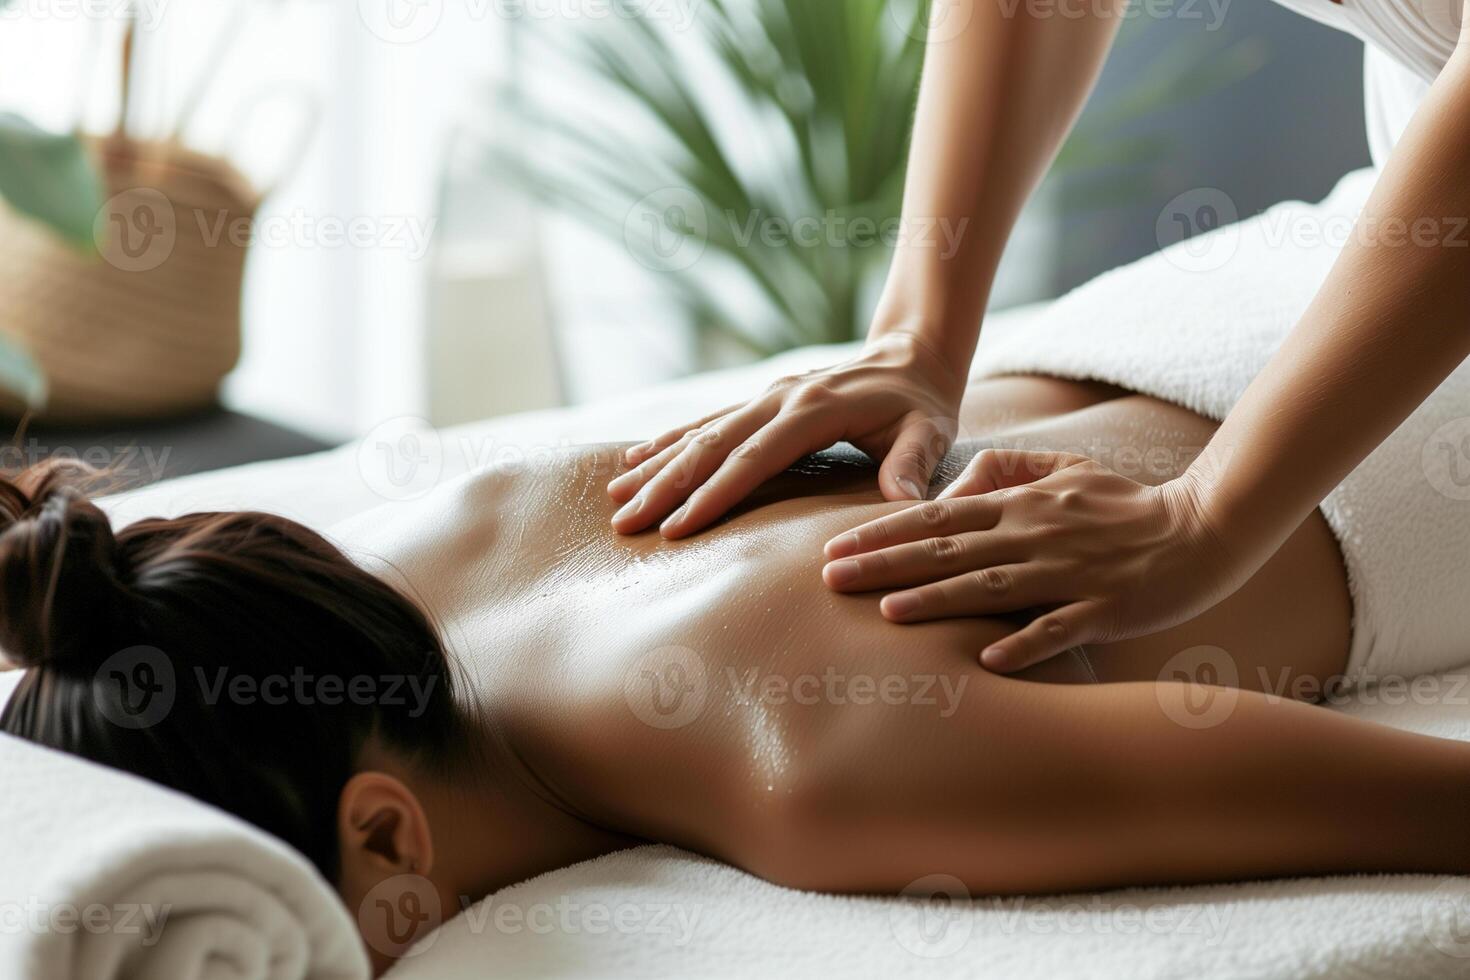 ai gegenereerd jong vrouw ontvangen terug massage in spa salon. schoonheid behandeling concept. foto